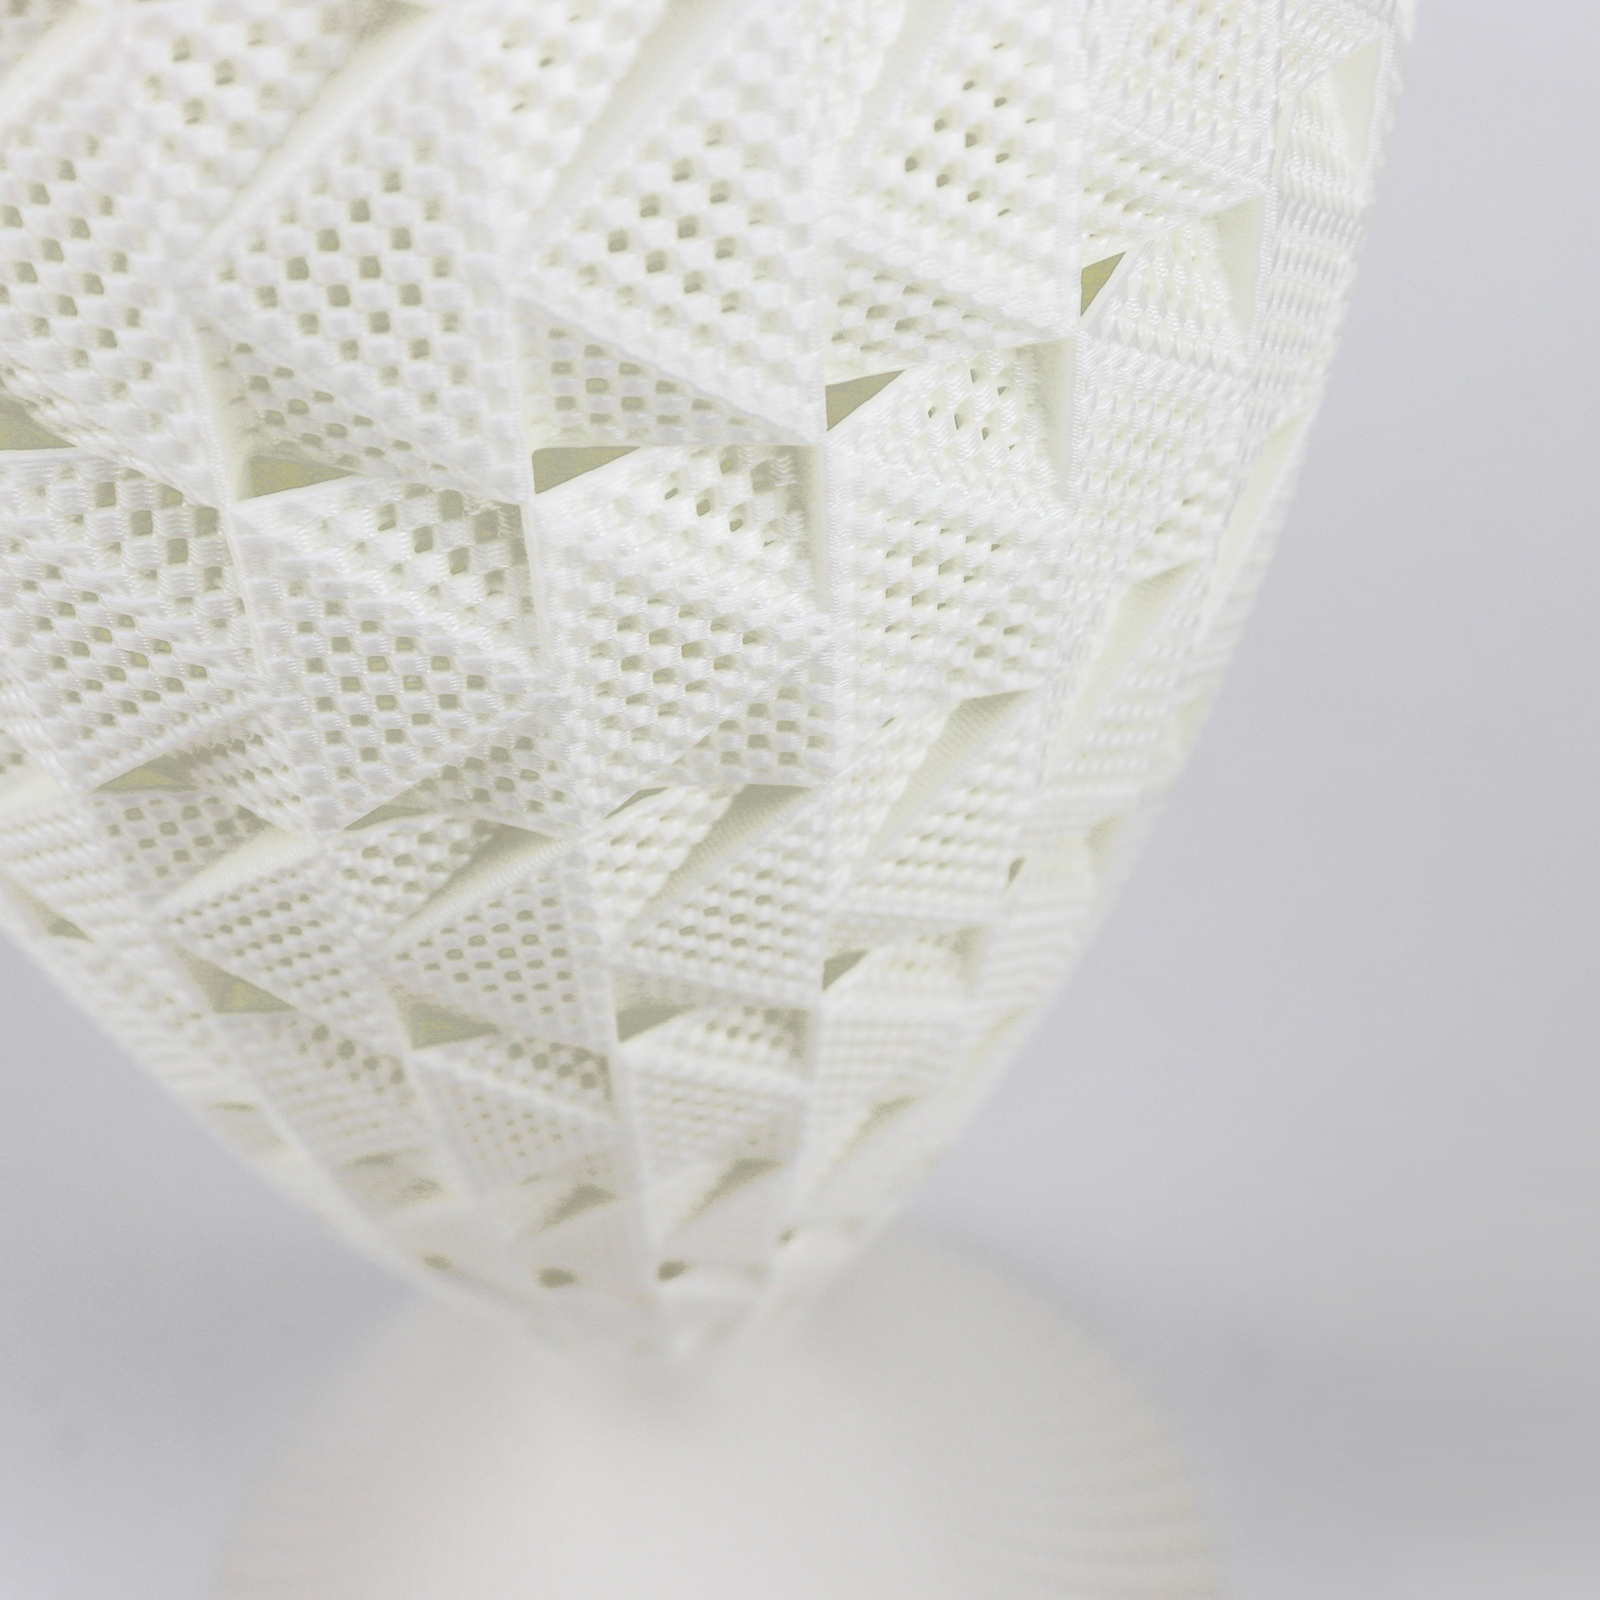 Fraktal tafellamp gemaakt van biomateriaal, zijde, 33 cm